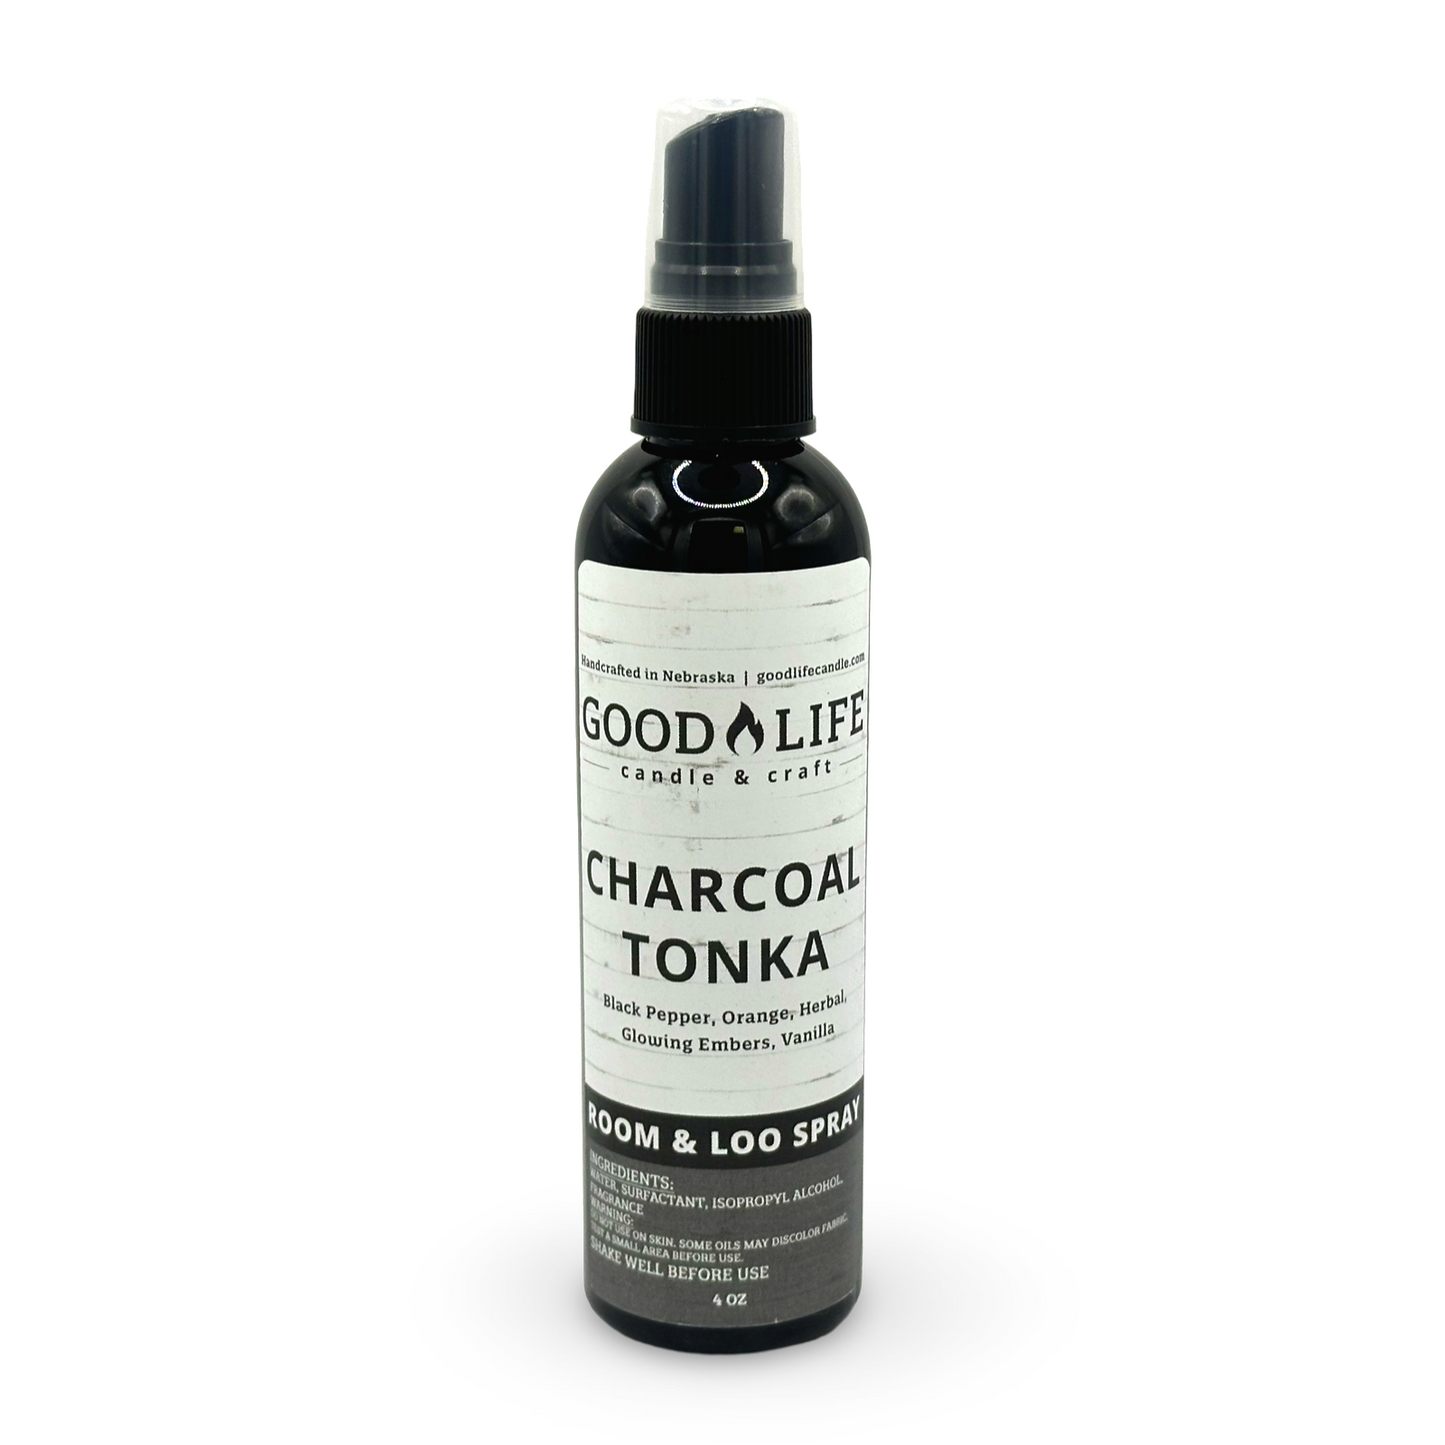 Charcoal Tonka Room & Loo Spray - 4 oz